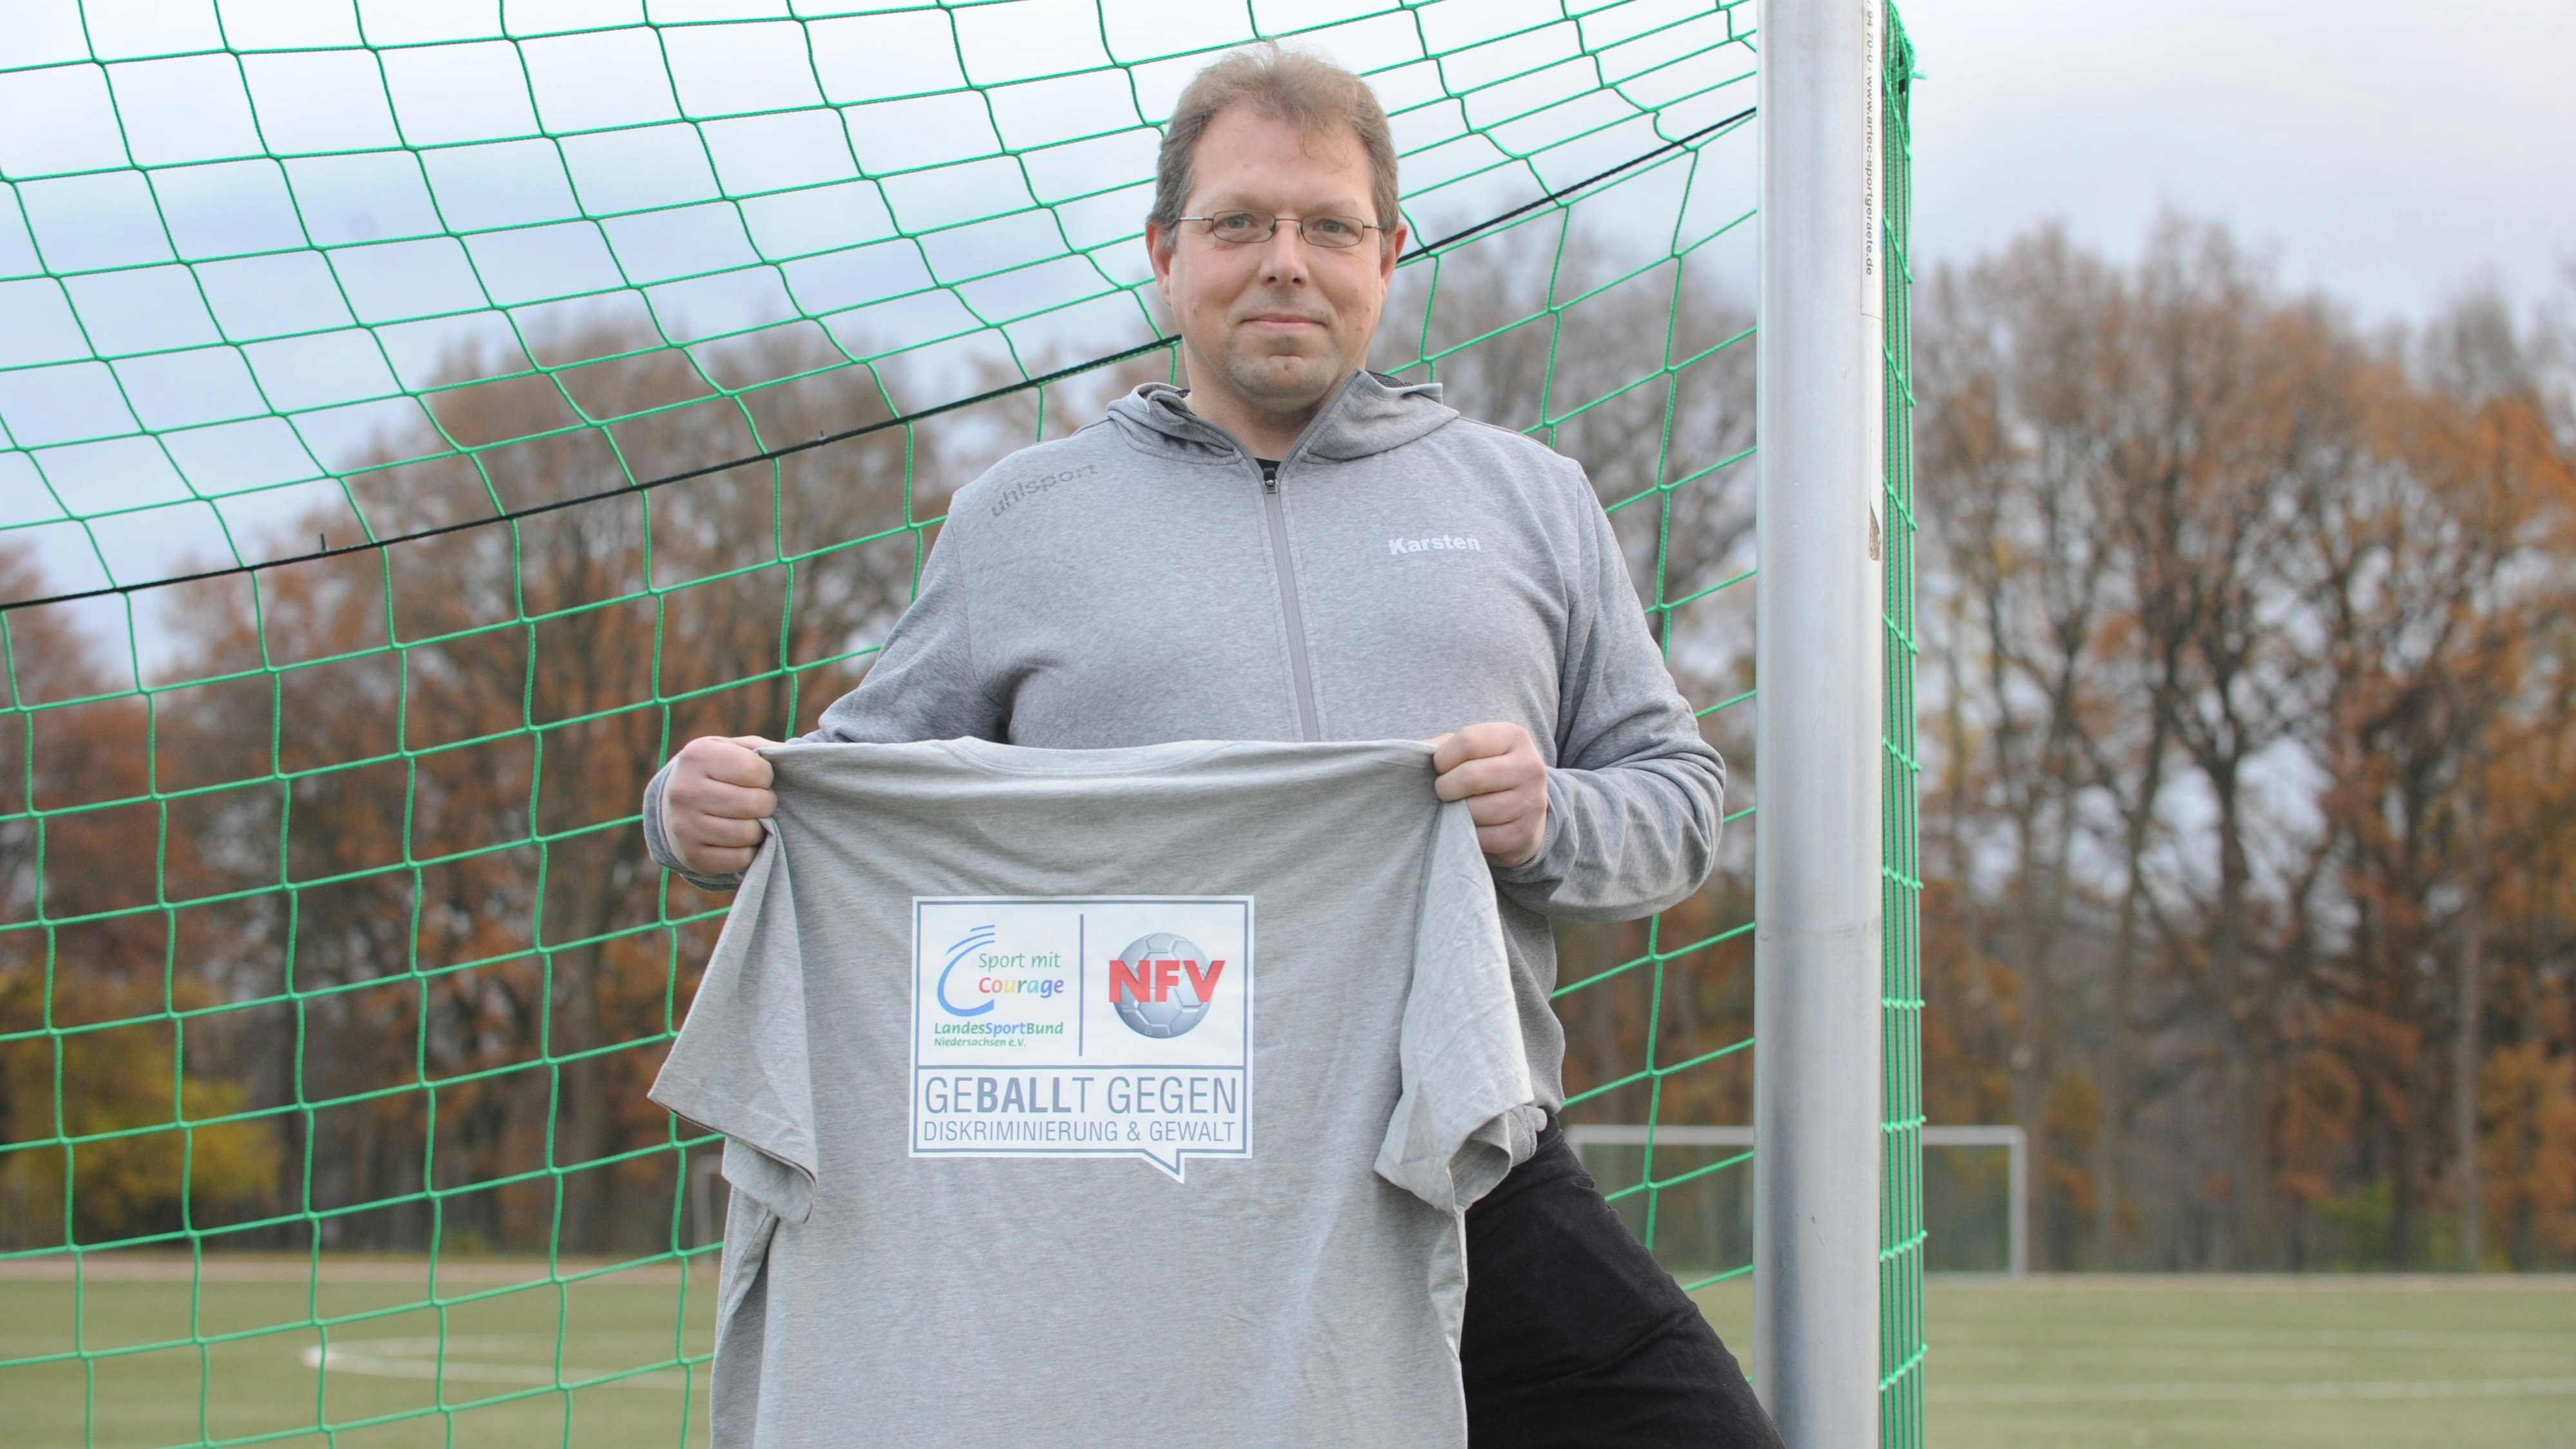 Ist bereit: Karsten Boll (45) aus Lastrup möchte seinen Teil dazu beitragen, dass es auf den Fußballplätzen in der Region so fair wie möglich zugeht. Foto: Bettenstaedt